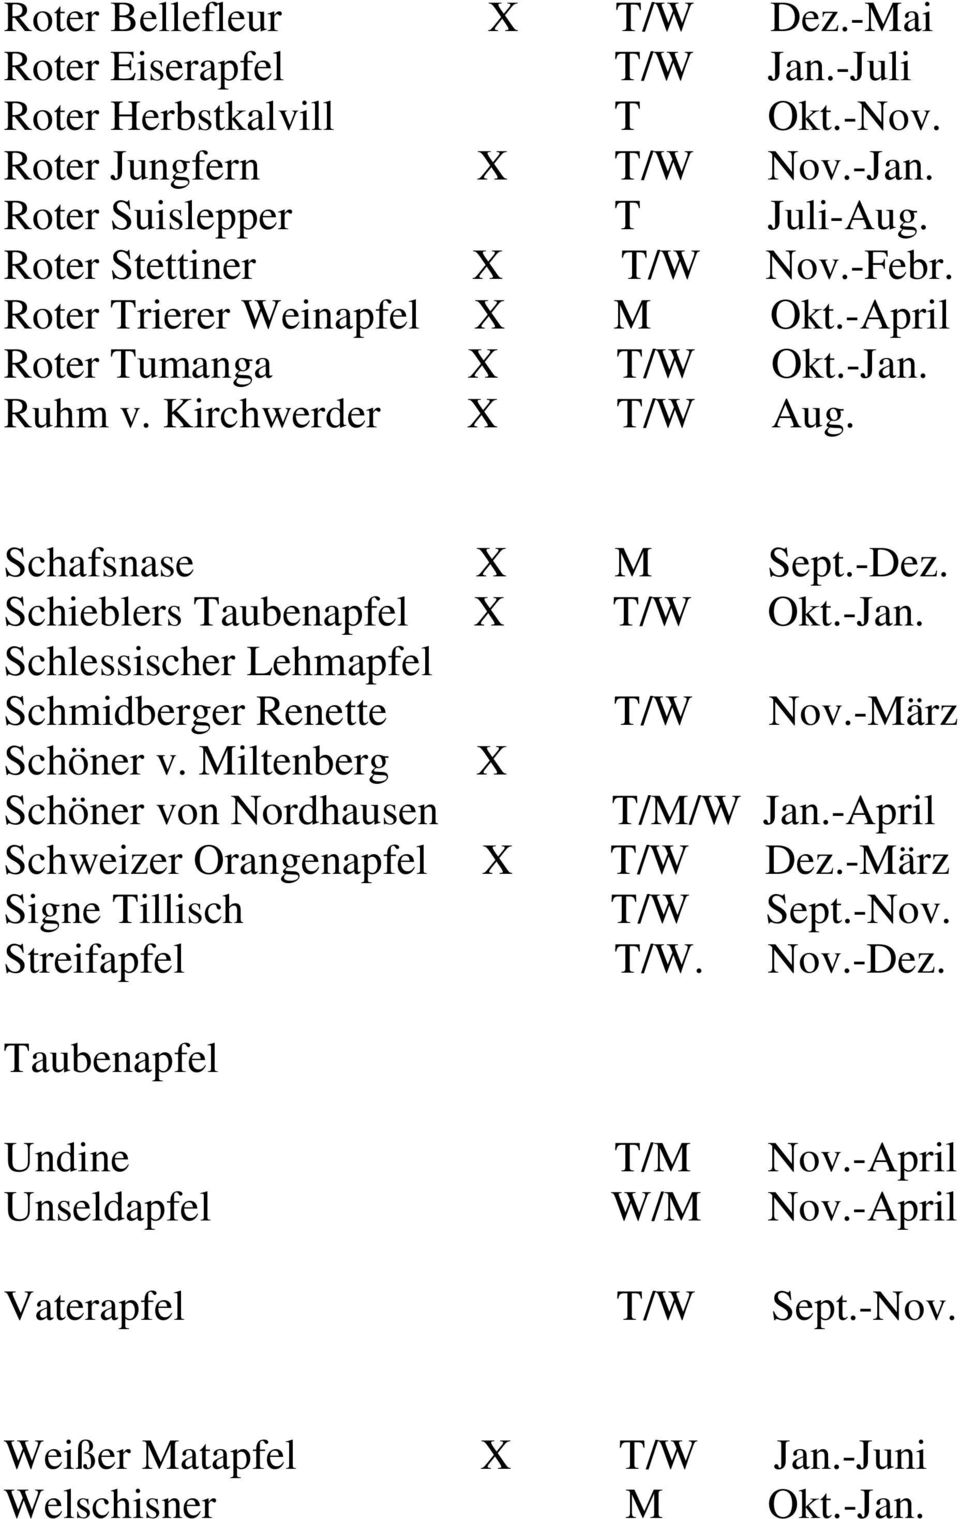 Schieblers Taubenapfel X T/W Okt.-Jan. Schlessischer Lehmapfel Schmidberger Renette T/W Nov.-März Schöner v. Miltenberg X Schöner von Nordhausen T/M/W Jan.